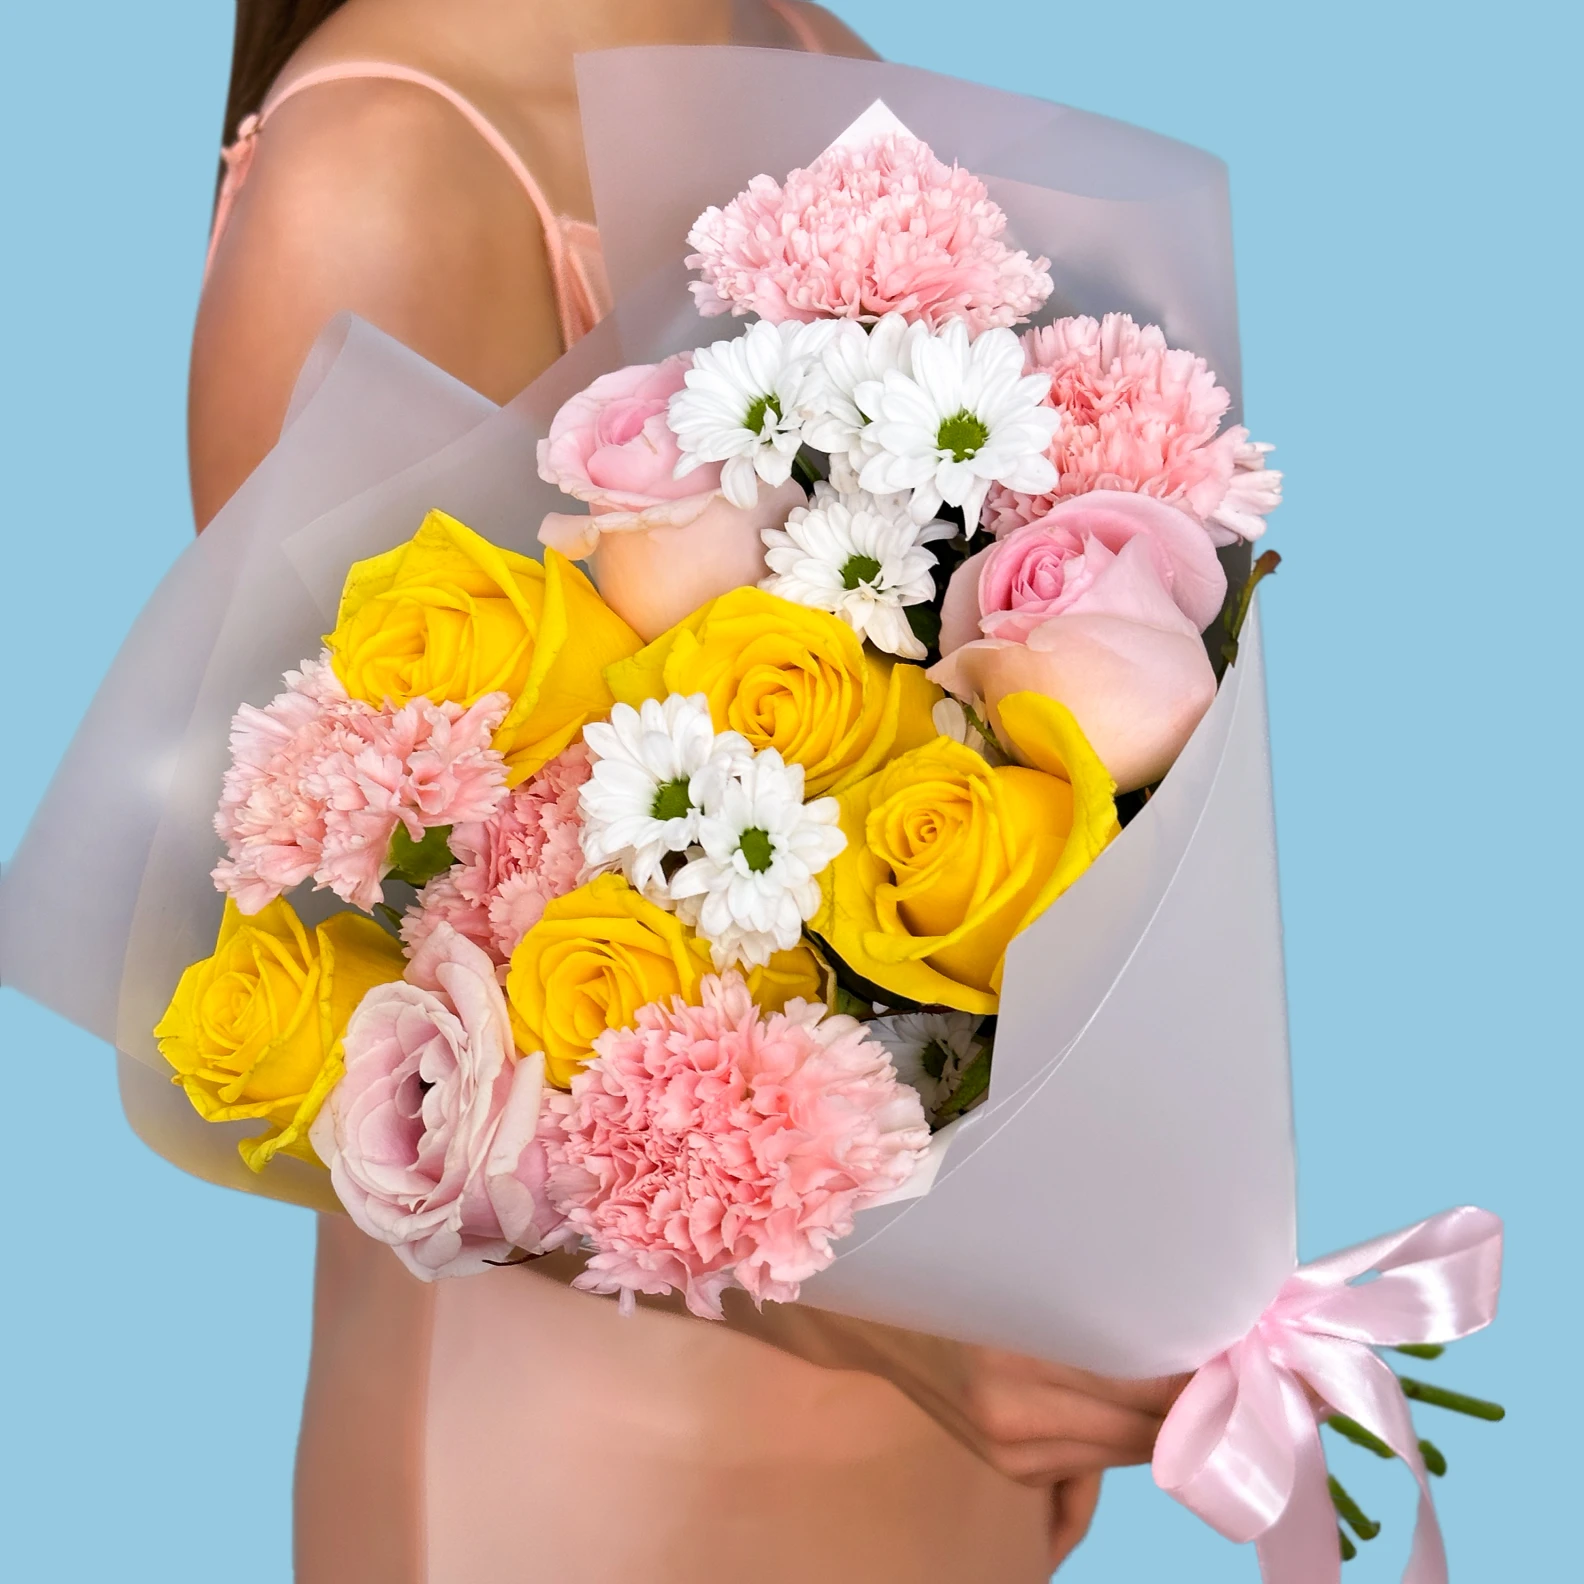 Fabulous Bouquet - image №4